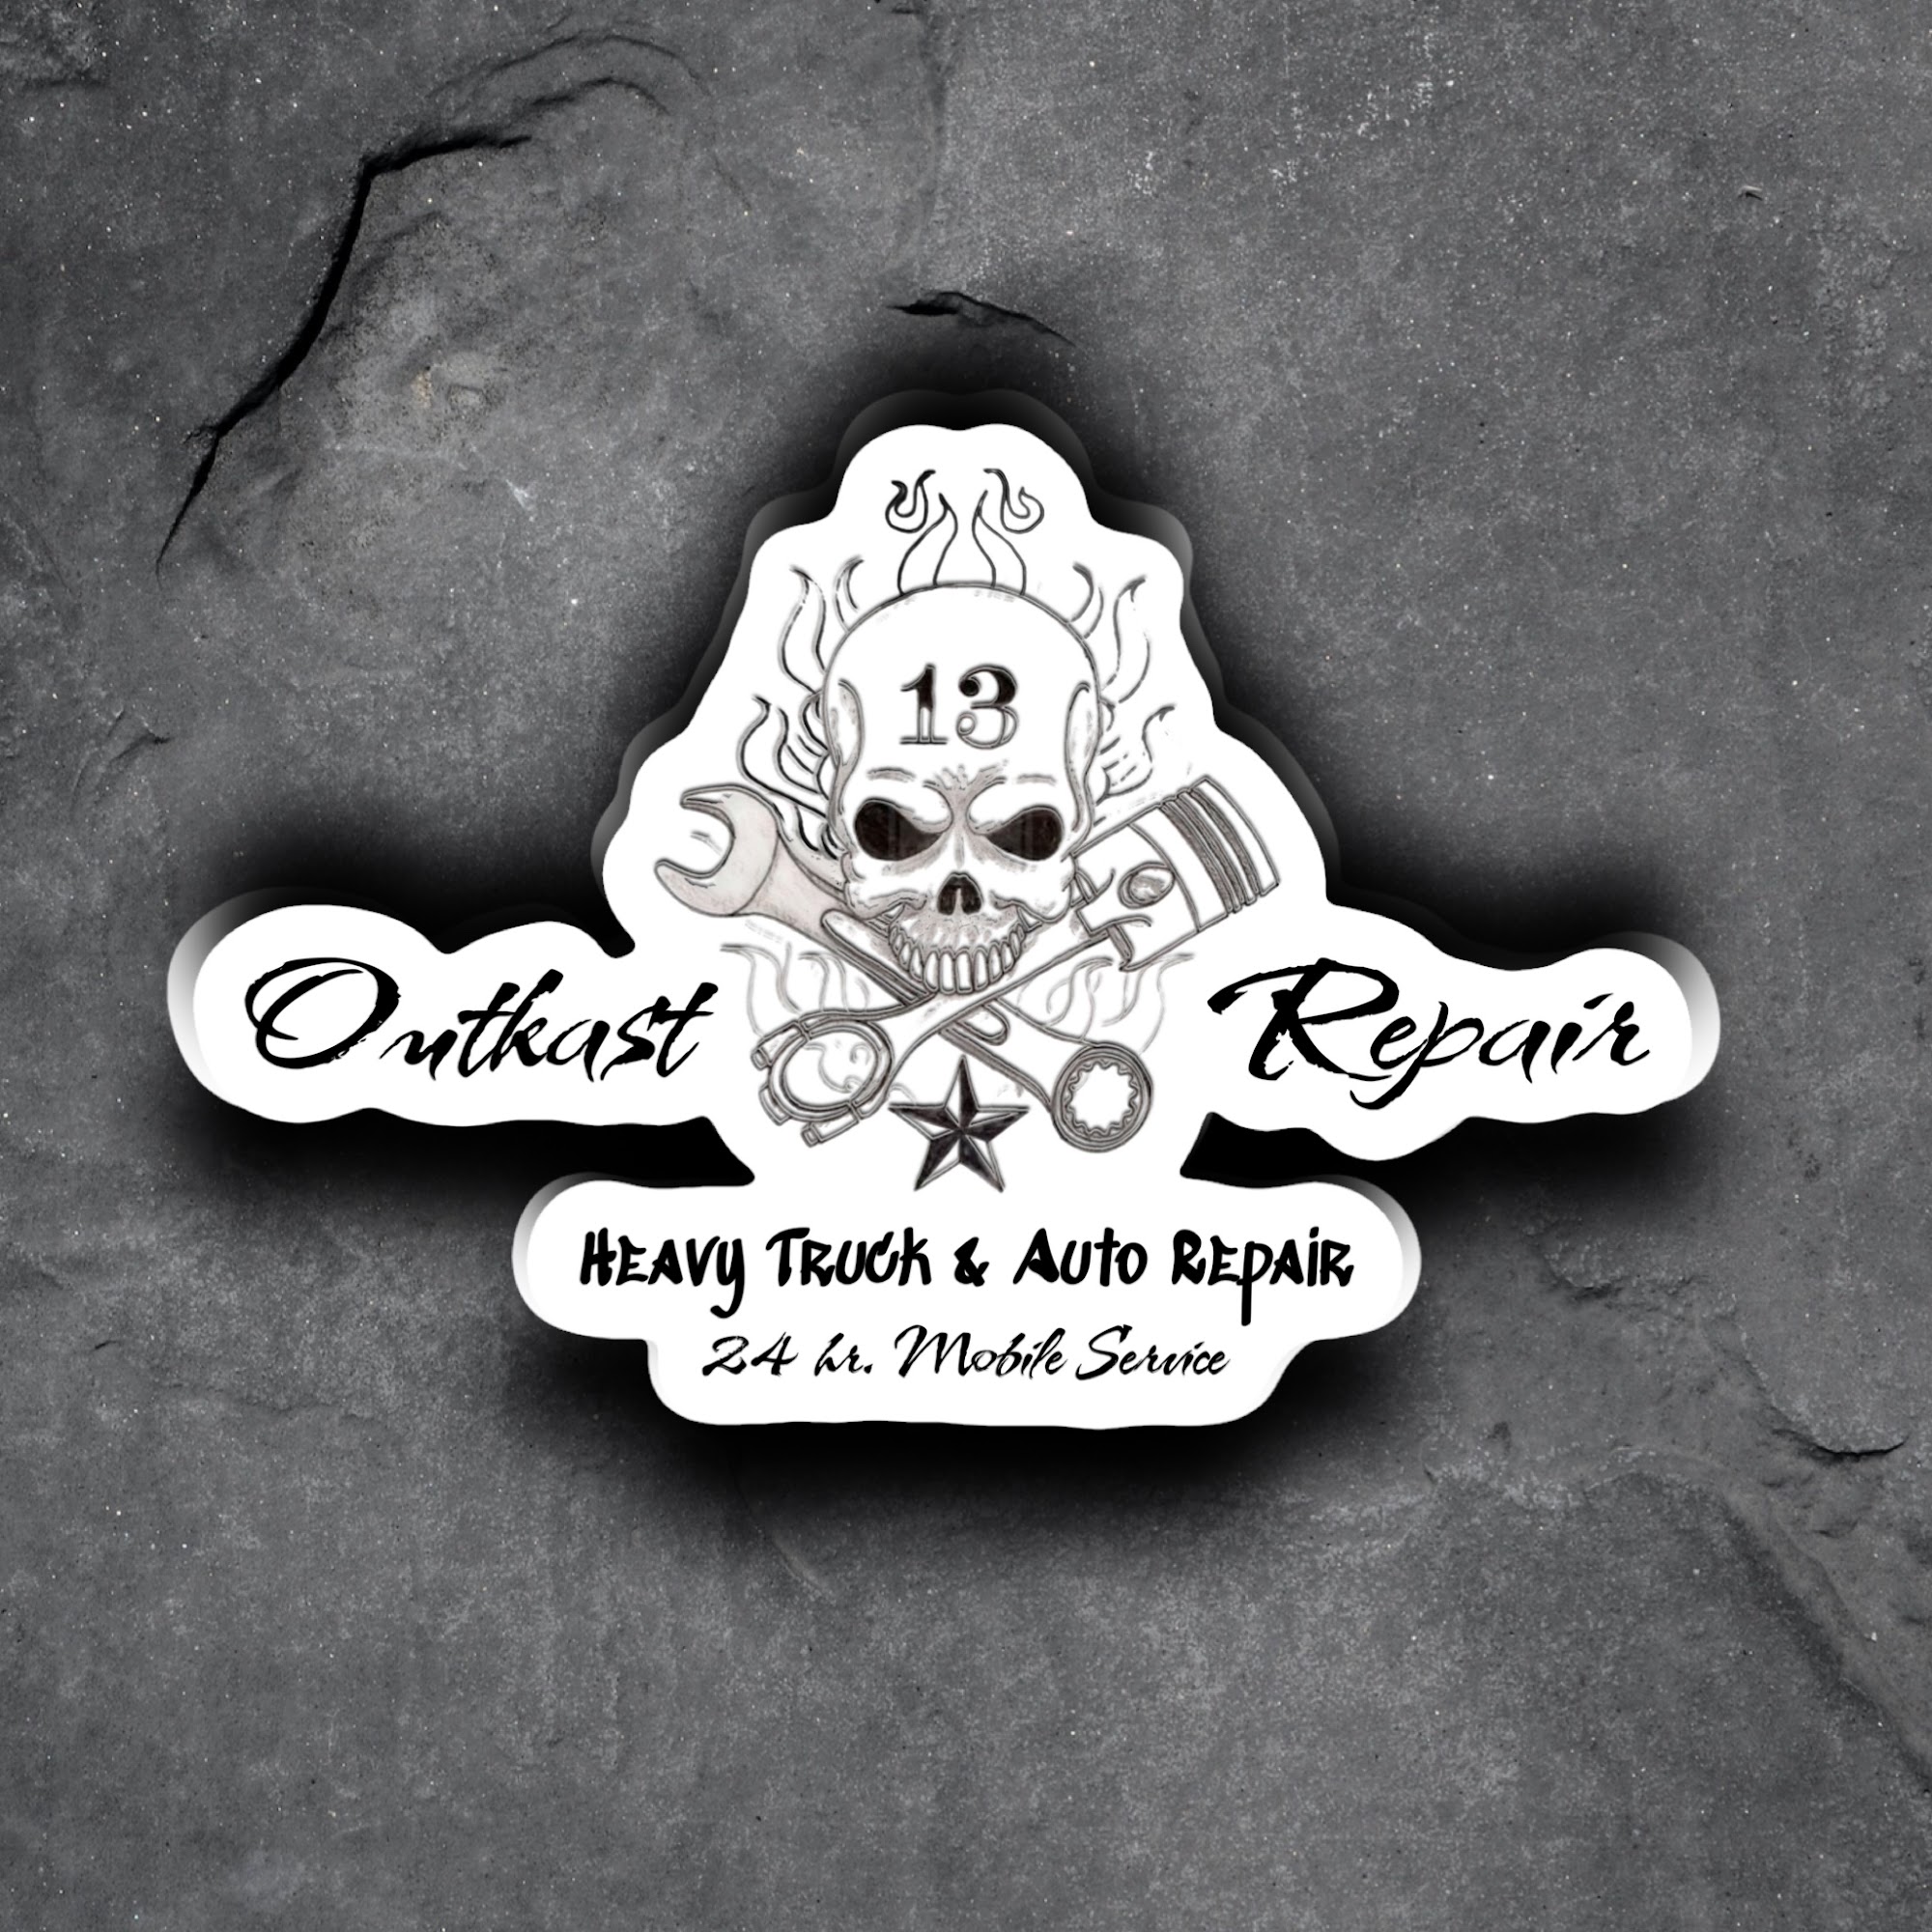 Outkast Repair LLC.